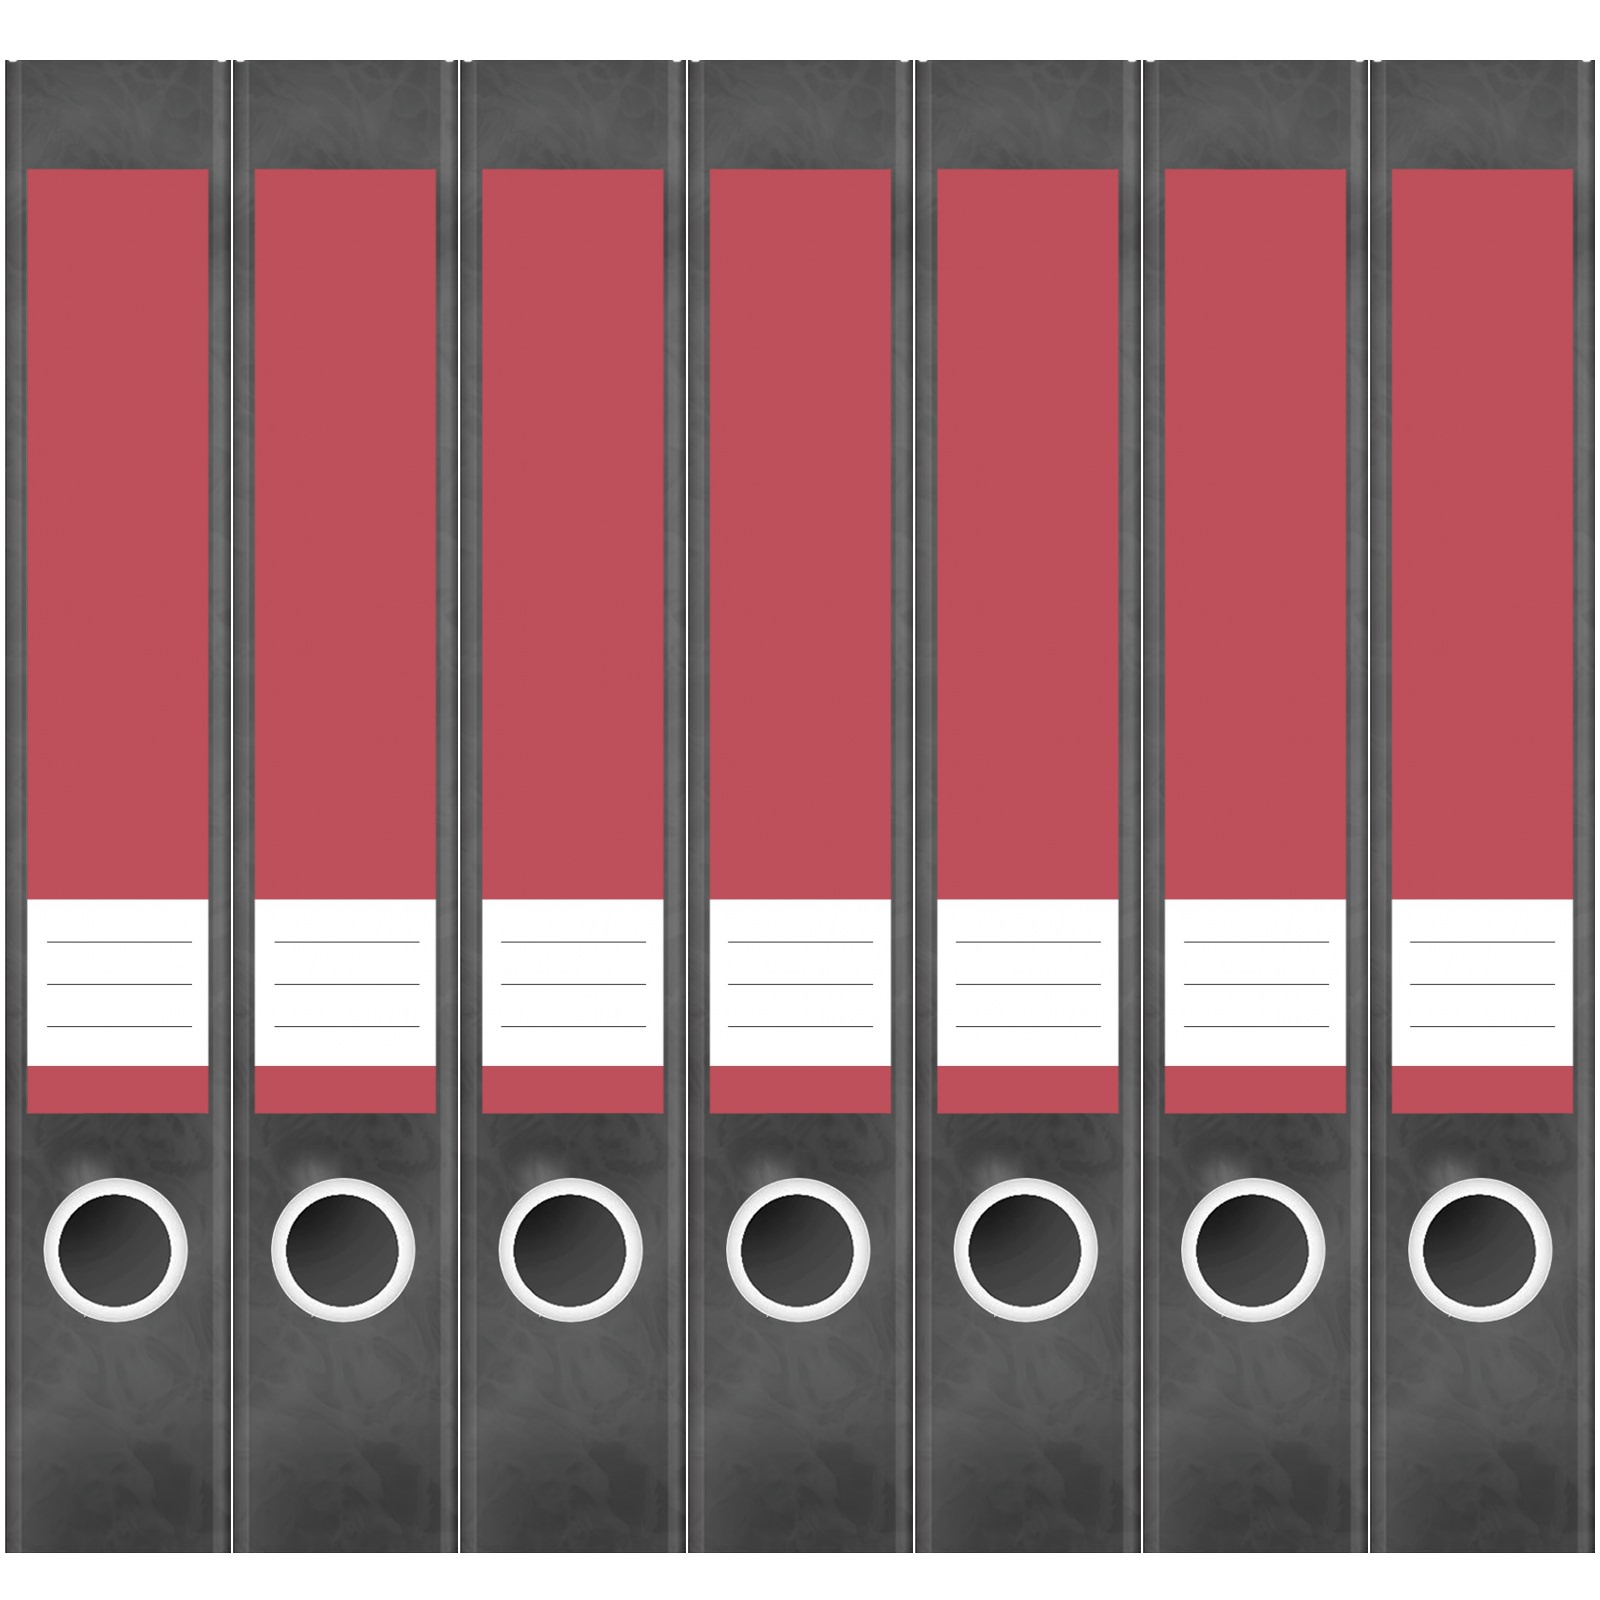 7 Ordner Etiketten Rücken-schilder selbstklebend Aktenrücken schmal rot 3 